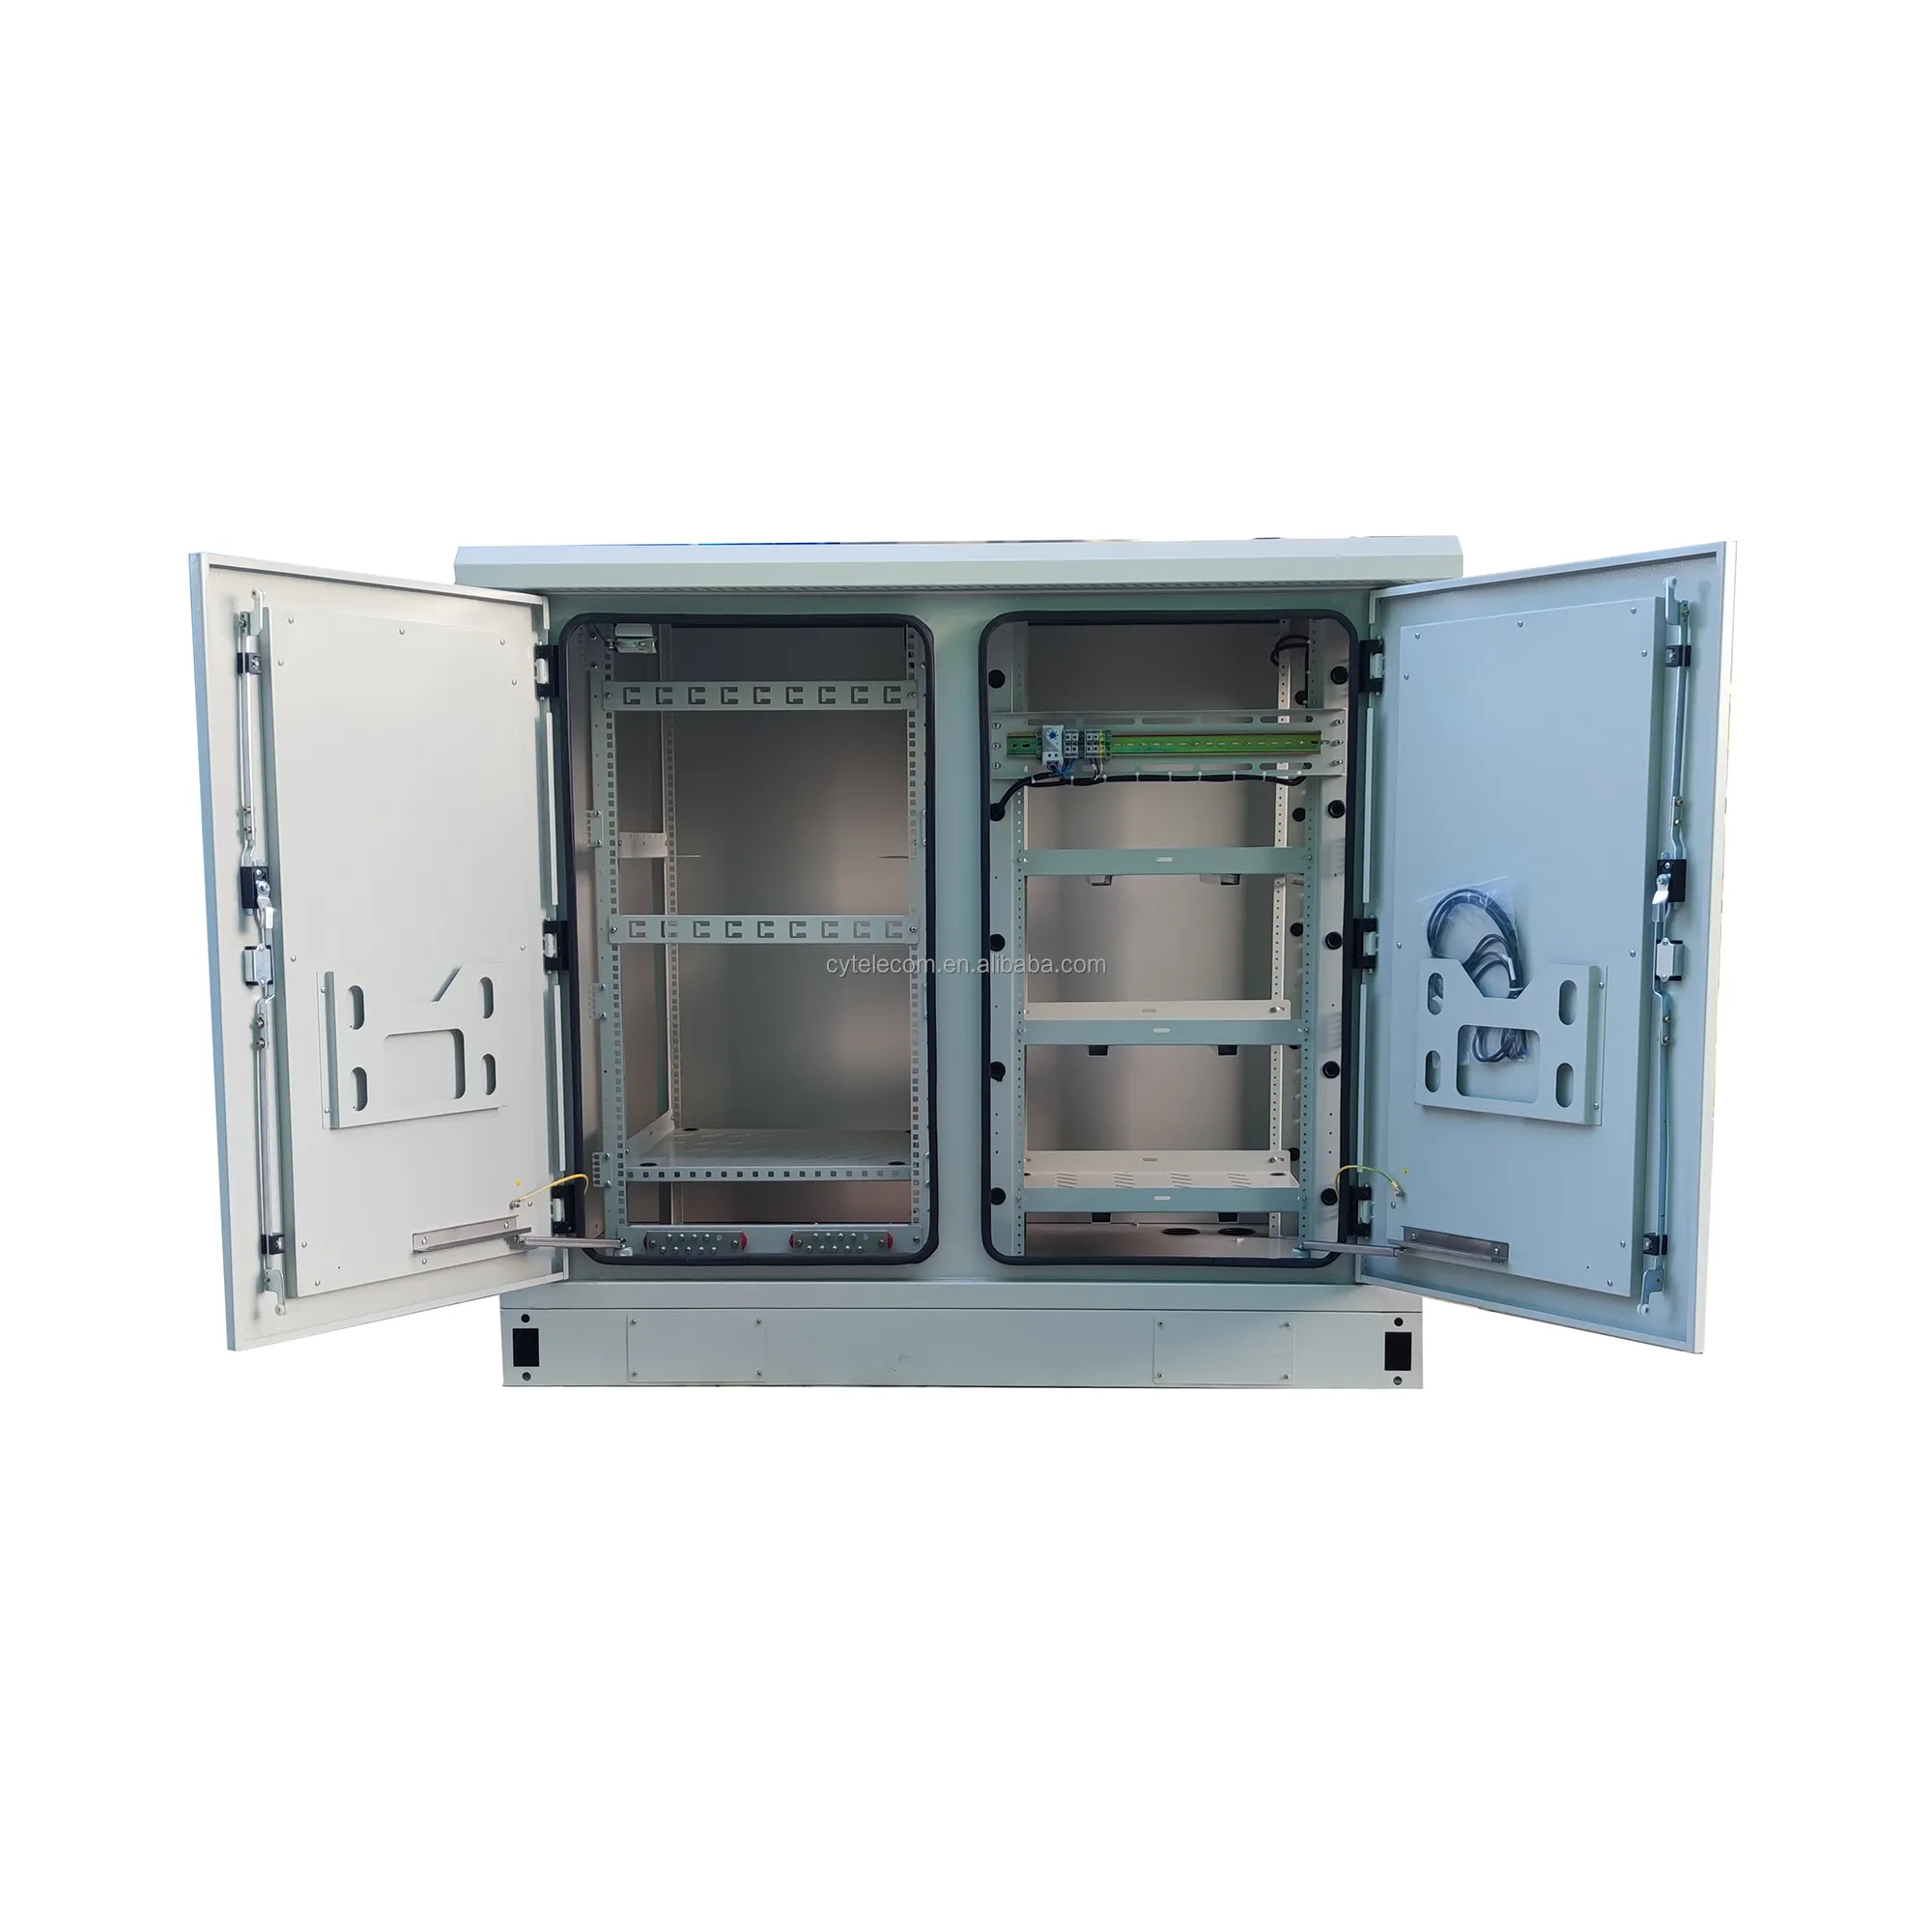 สภาพอากาศ Enclosure IP55โทรคมนาคมแบตเตอรี่ไฟฟ้าตู้